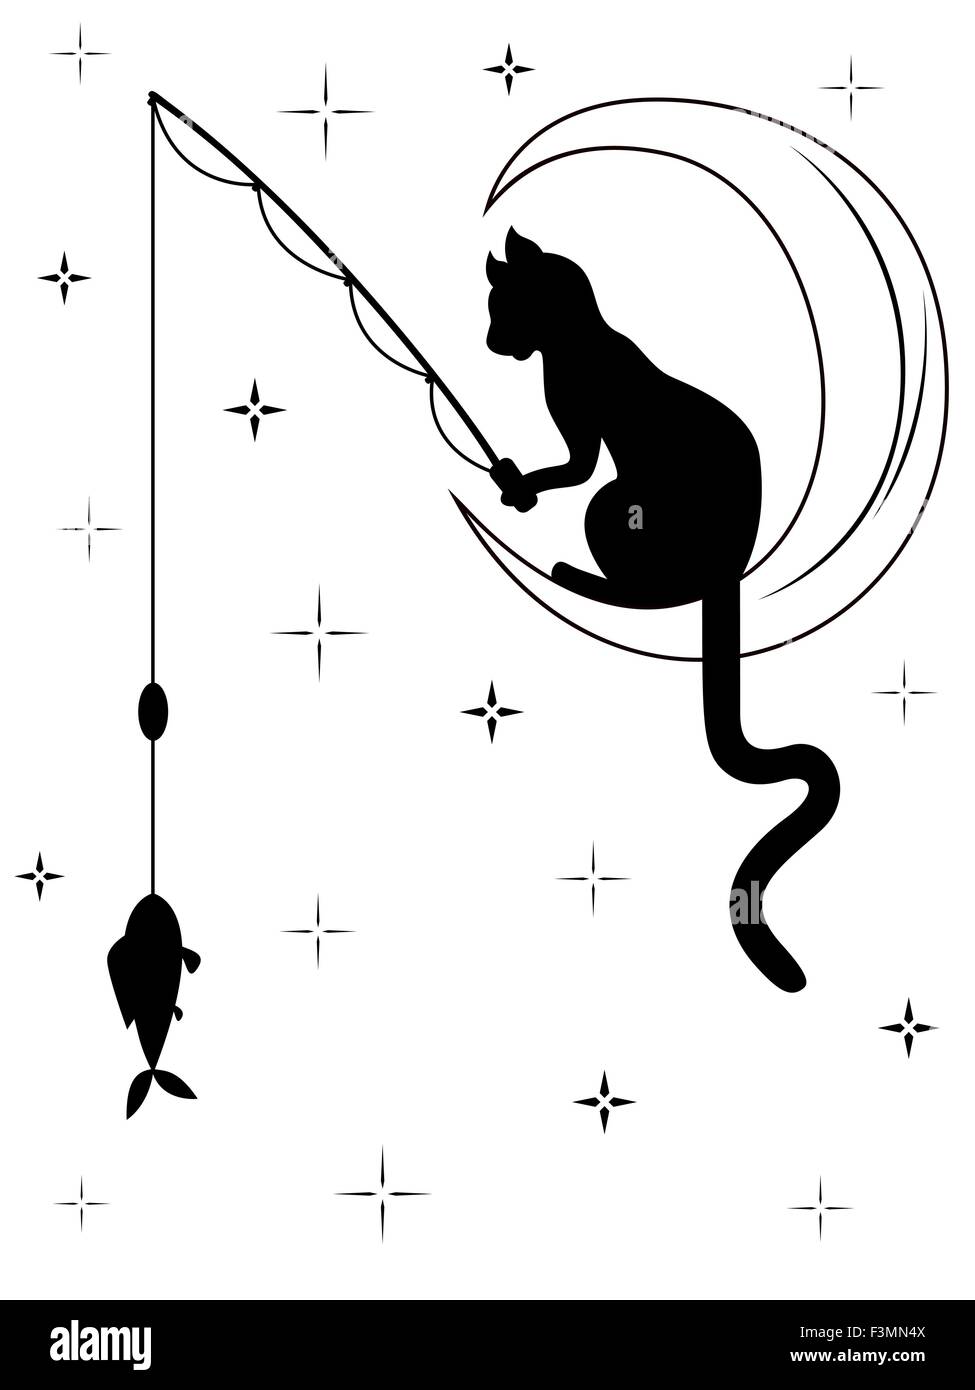 Gato negro con larga cola sentado en la luna entre el cielo estrellado y las capturas de peces con una caña de pescar, vector de cartón blanco y negro Ilustración del Vector